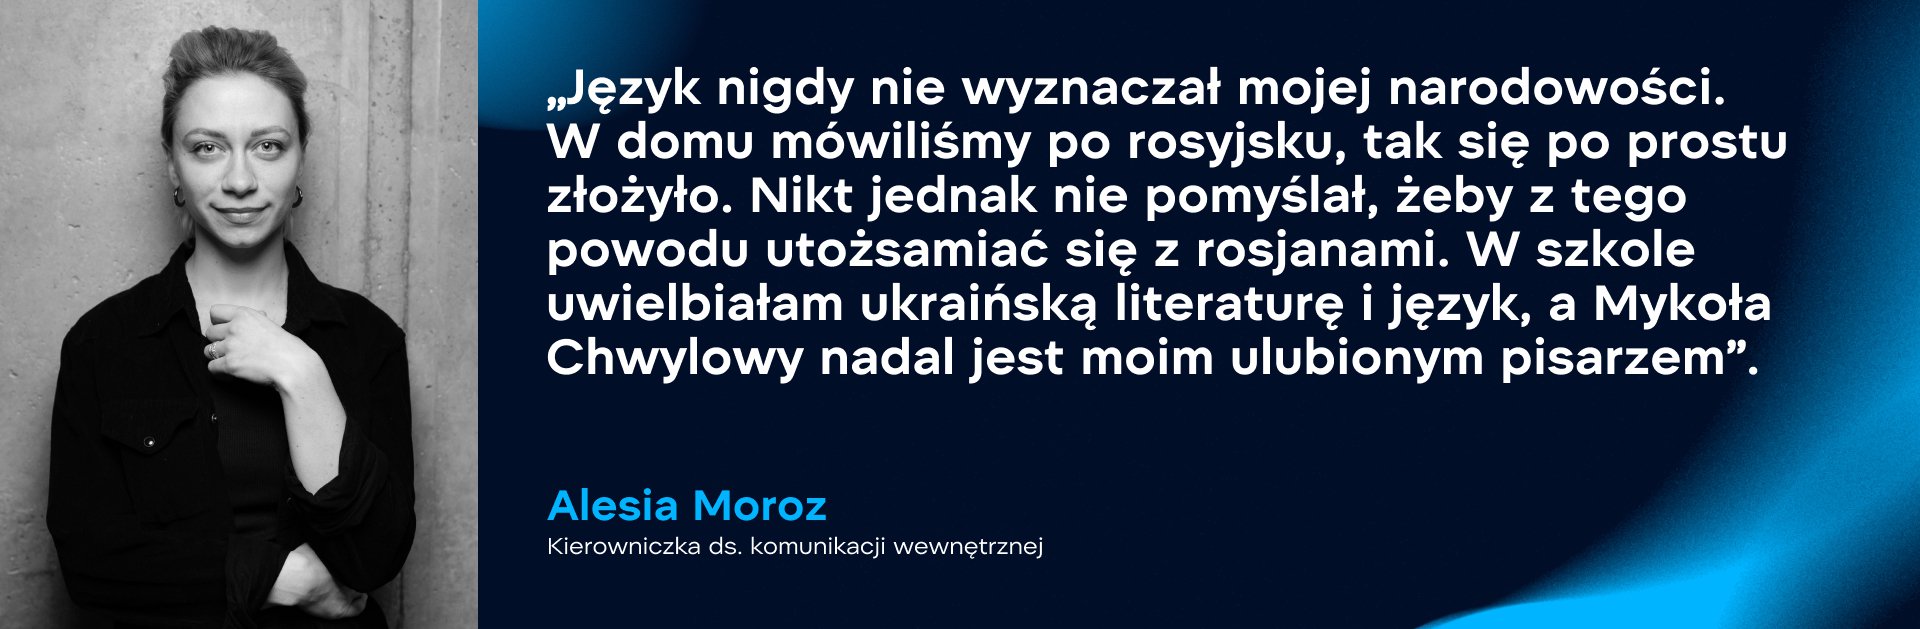 Alesia Moroz, kierowniczka ds. komunikacji wewnętrznej. Zdjęcie: WePlay Holding